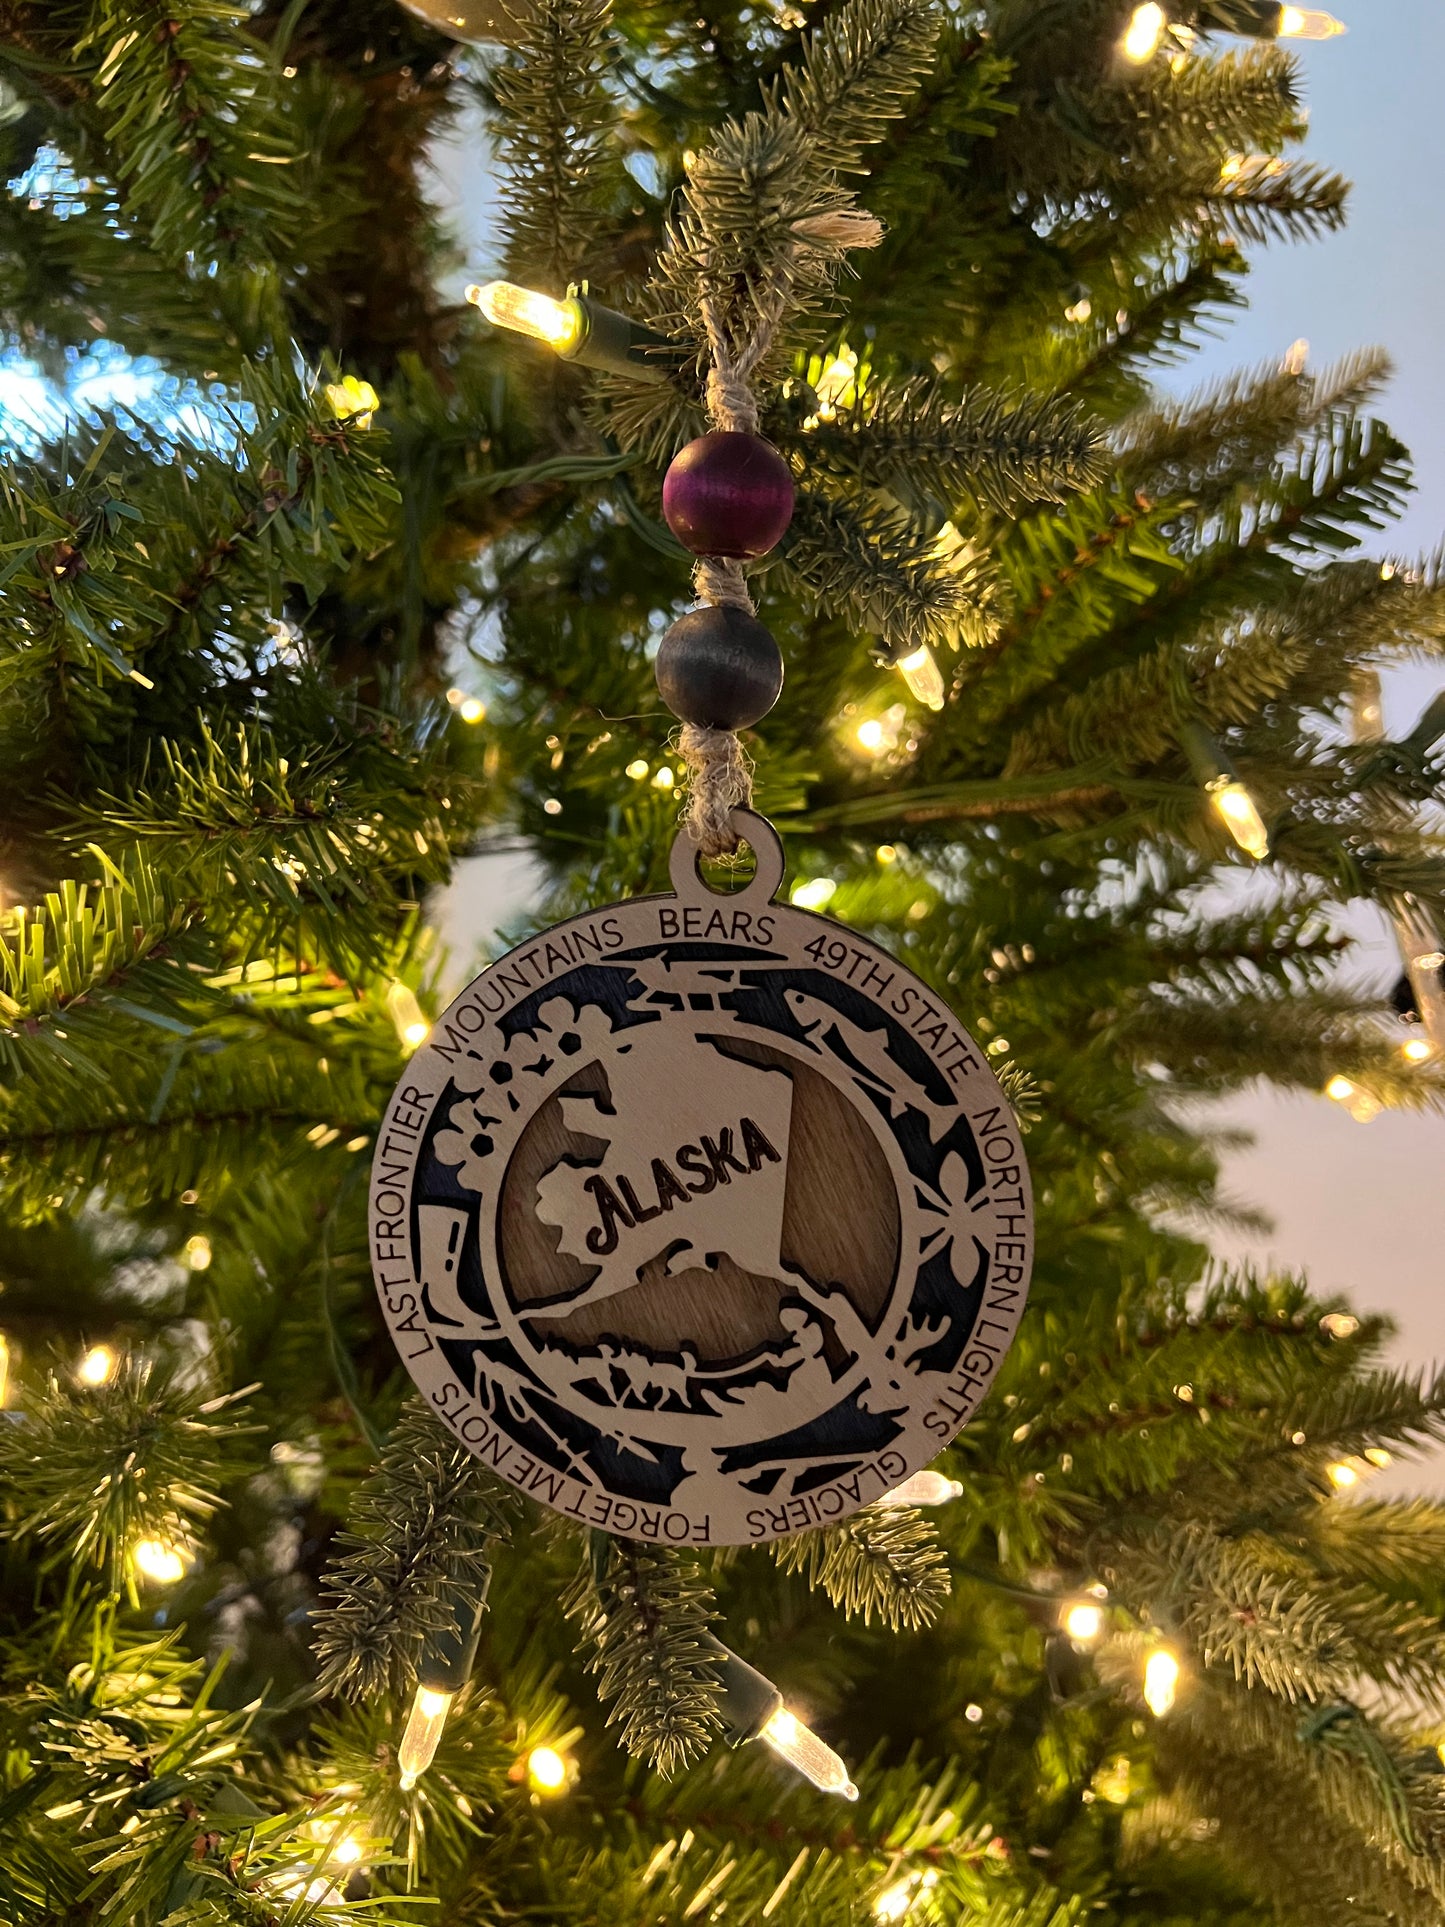 Display State Christmas Ornament - Alaska